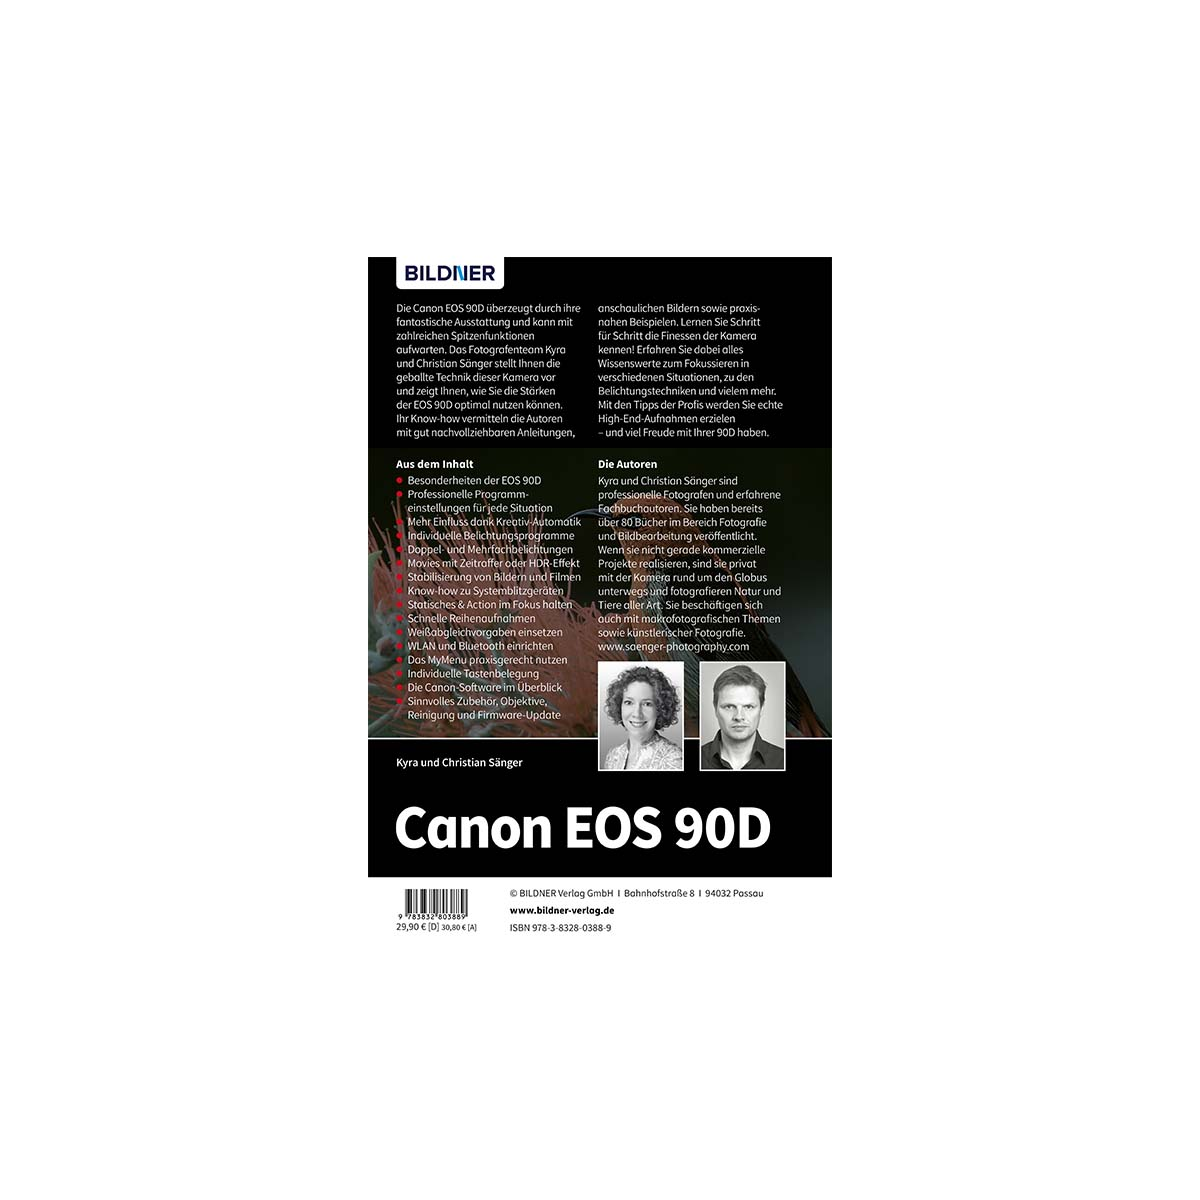 Canon EOS 90D Kamera! Das Praxisbuch Ihrer umfangreiche - zu